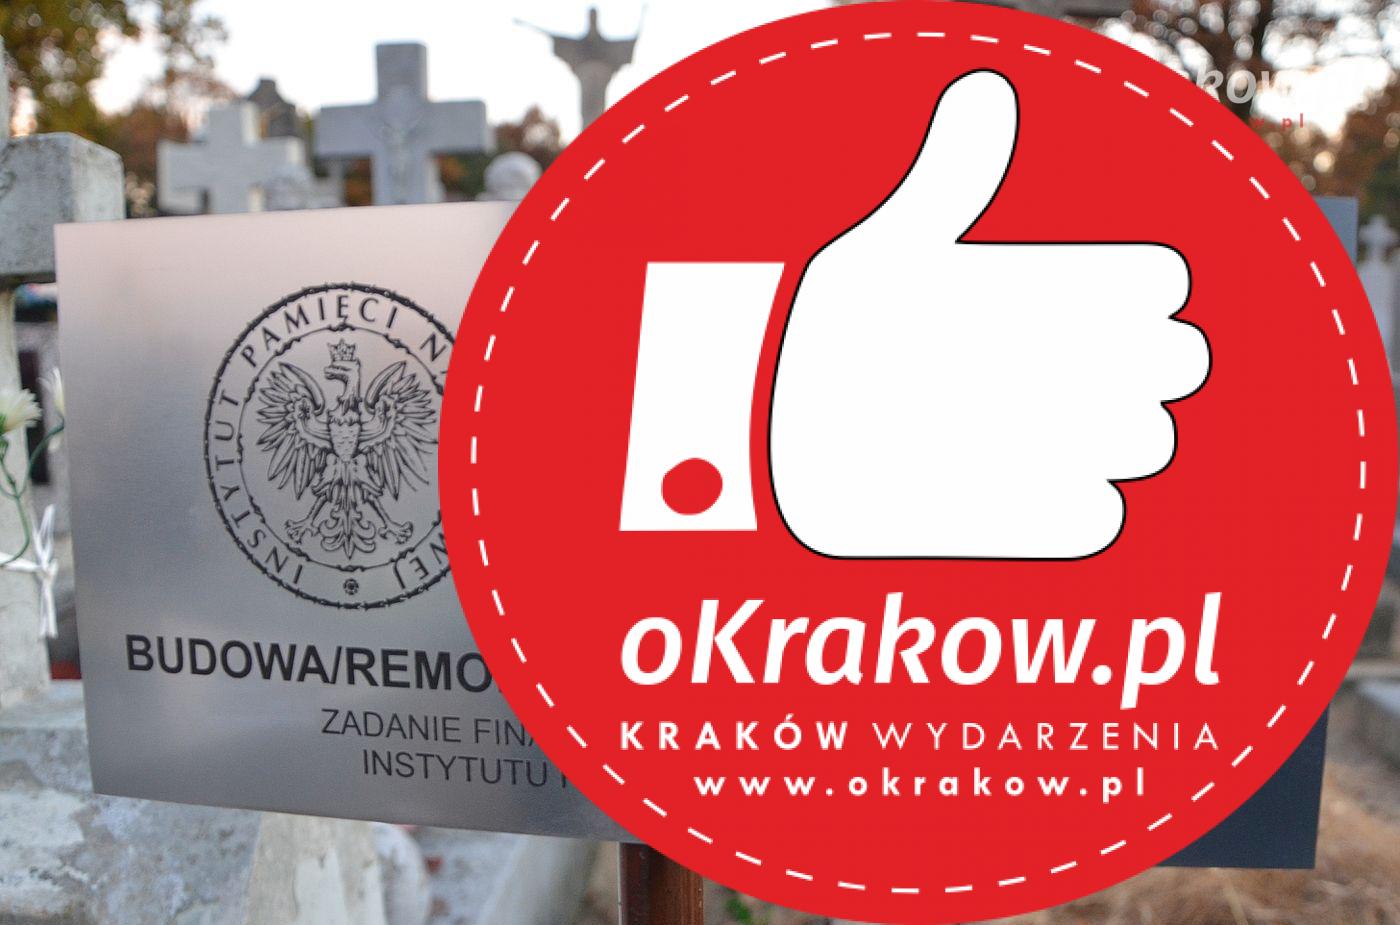 dsc 3181 - Krakowski IPN remontuje groby weteranów walk o niepodległość Polski